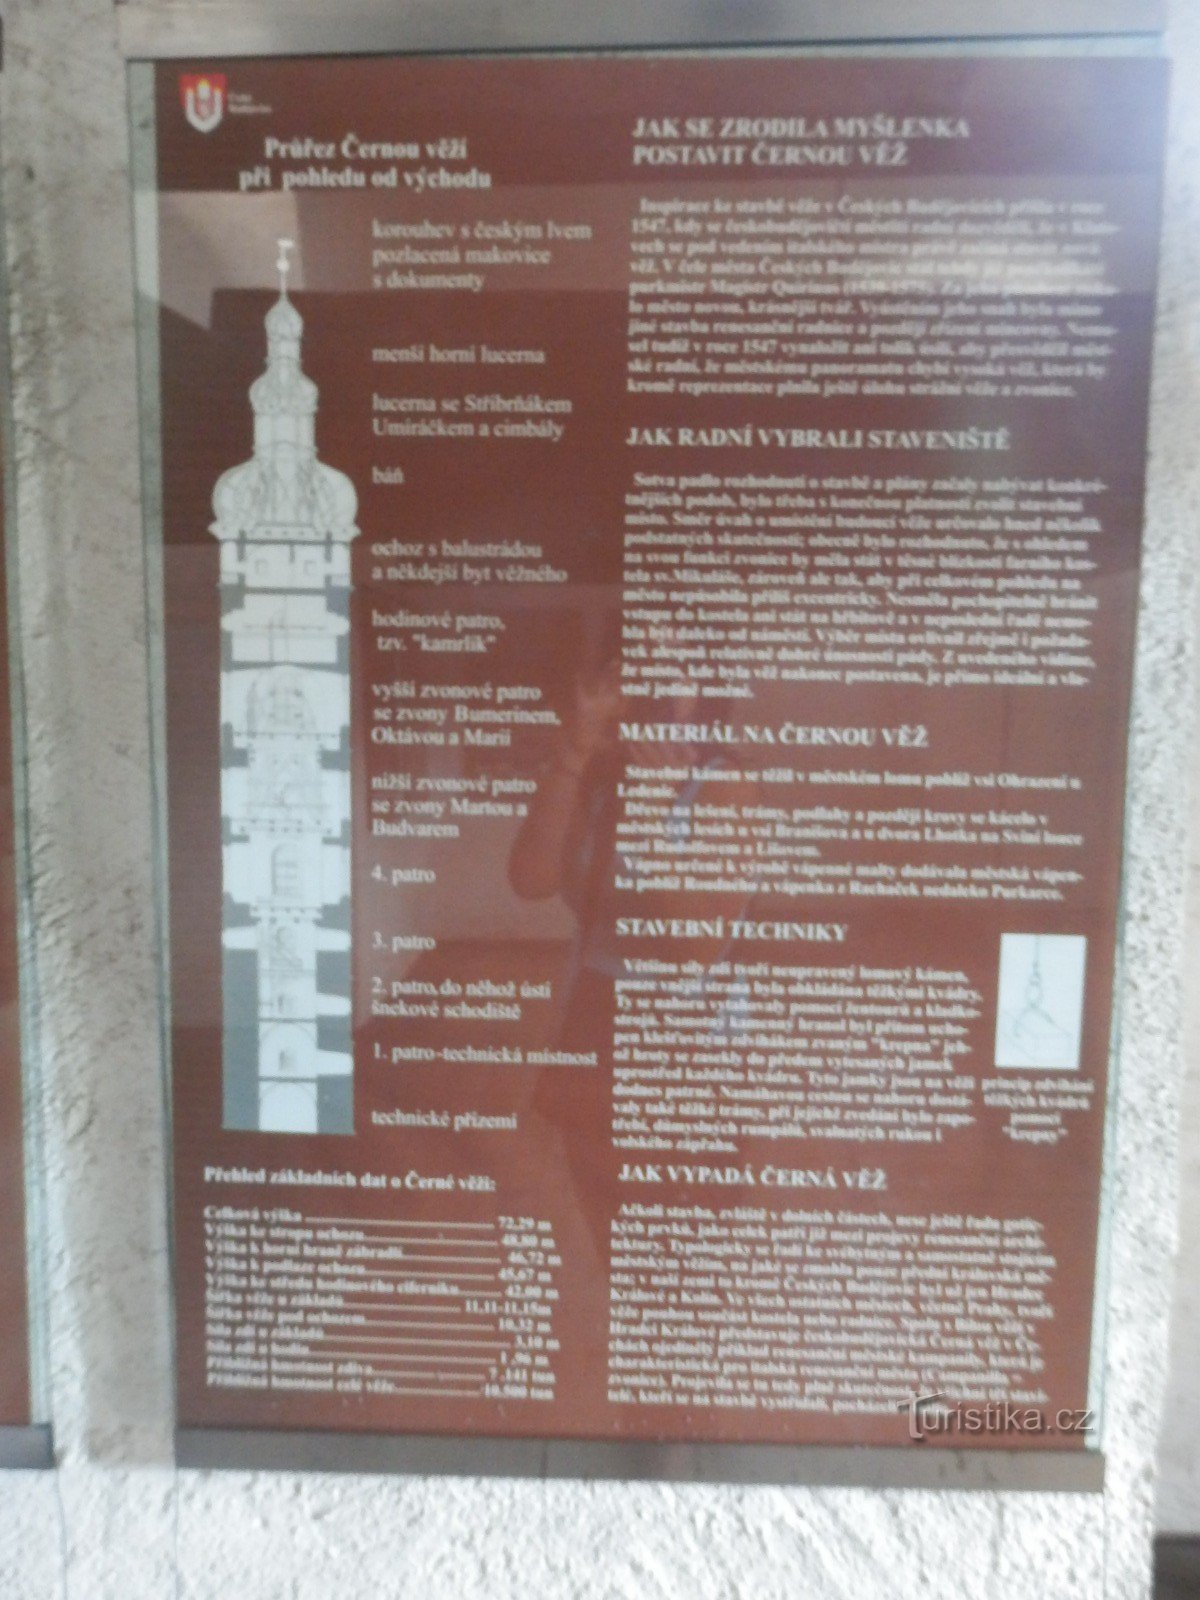 Črni stolp - České Budějovice